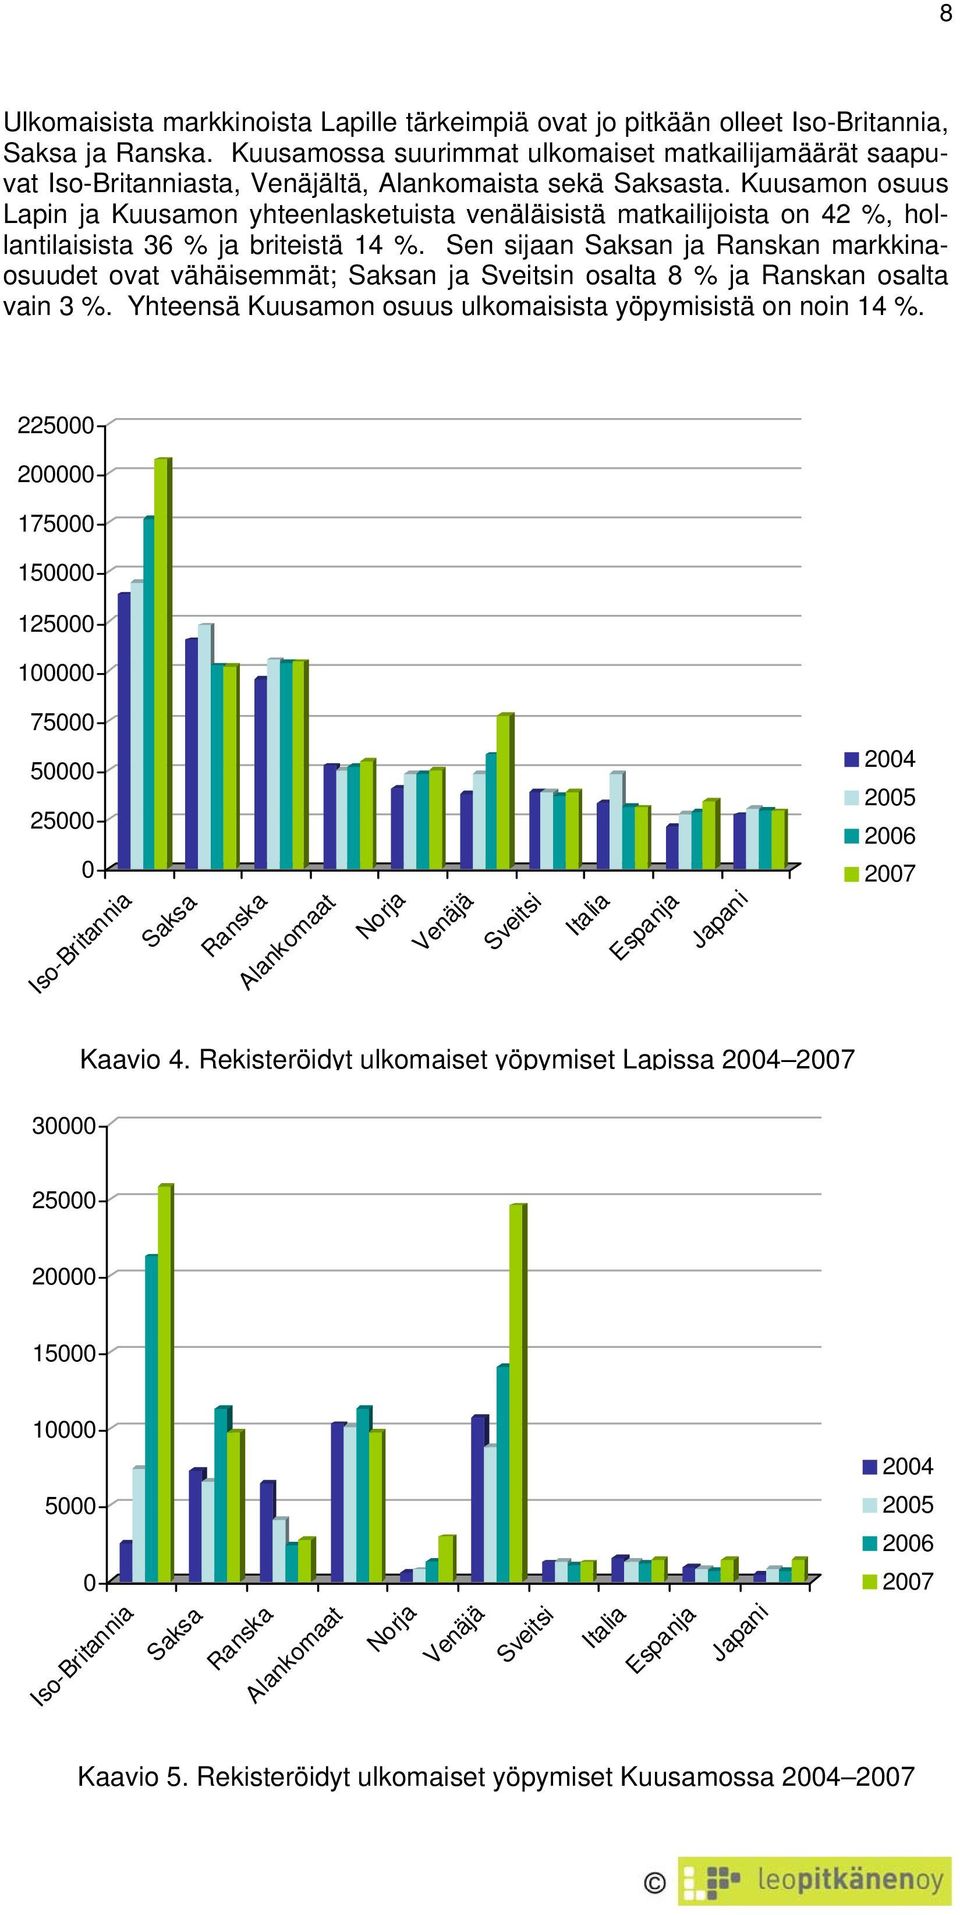 Kuusamon osuus Lapin ja Kuusamon yhteenlasketuista venäläisistä matkailijoista on 42 %, hollantilaisista 36 % ja briteistä 14 %.